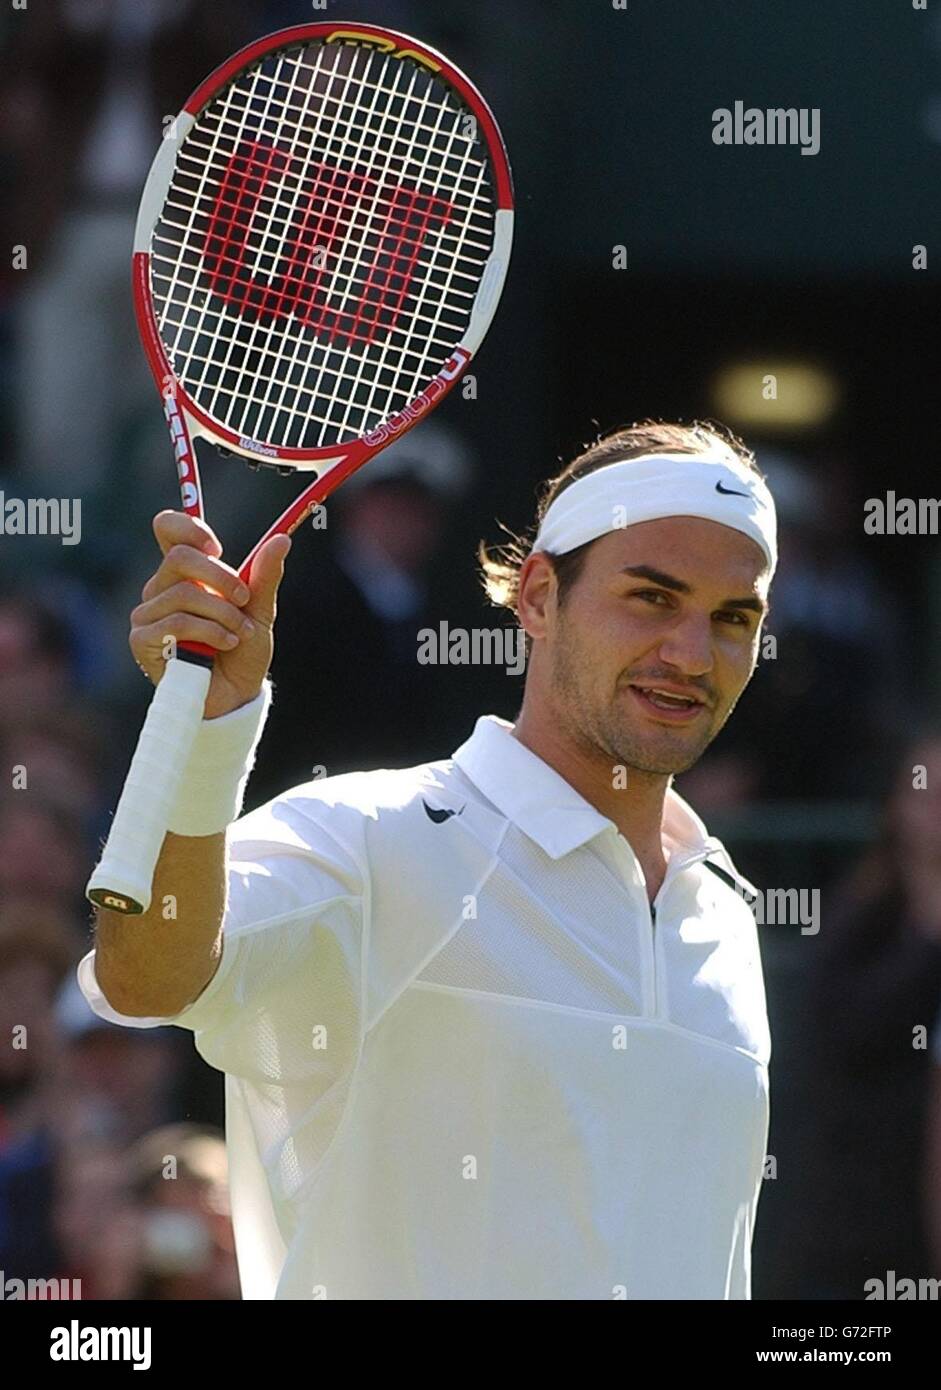 Le champion défenseur Roger Federer élève sa raquette sur le terrain après  avoir battu Alejandro Falla de Columbia aux championnats de tennis de  pelouse à Wimbledon, Londres.Federer a gagné en jeux droits